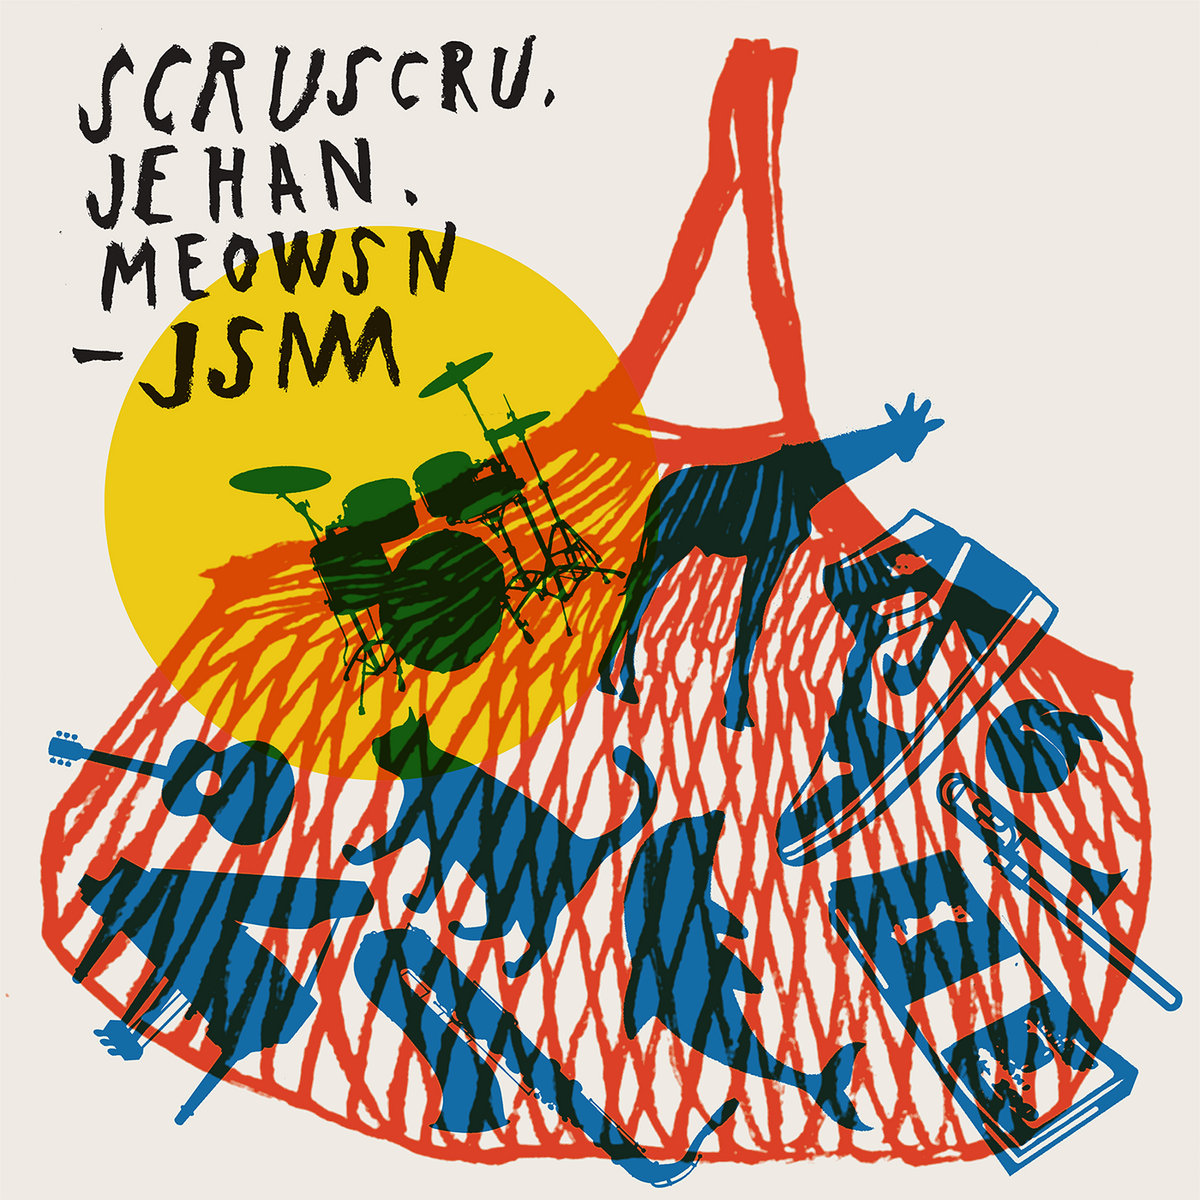 Scruscru -  JSM LP (Scruscru, Jehan, Meowsn)